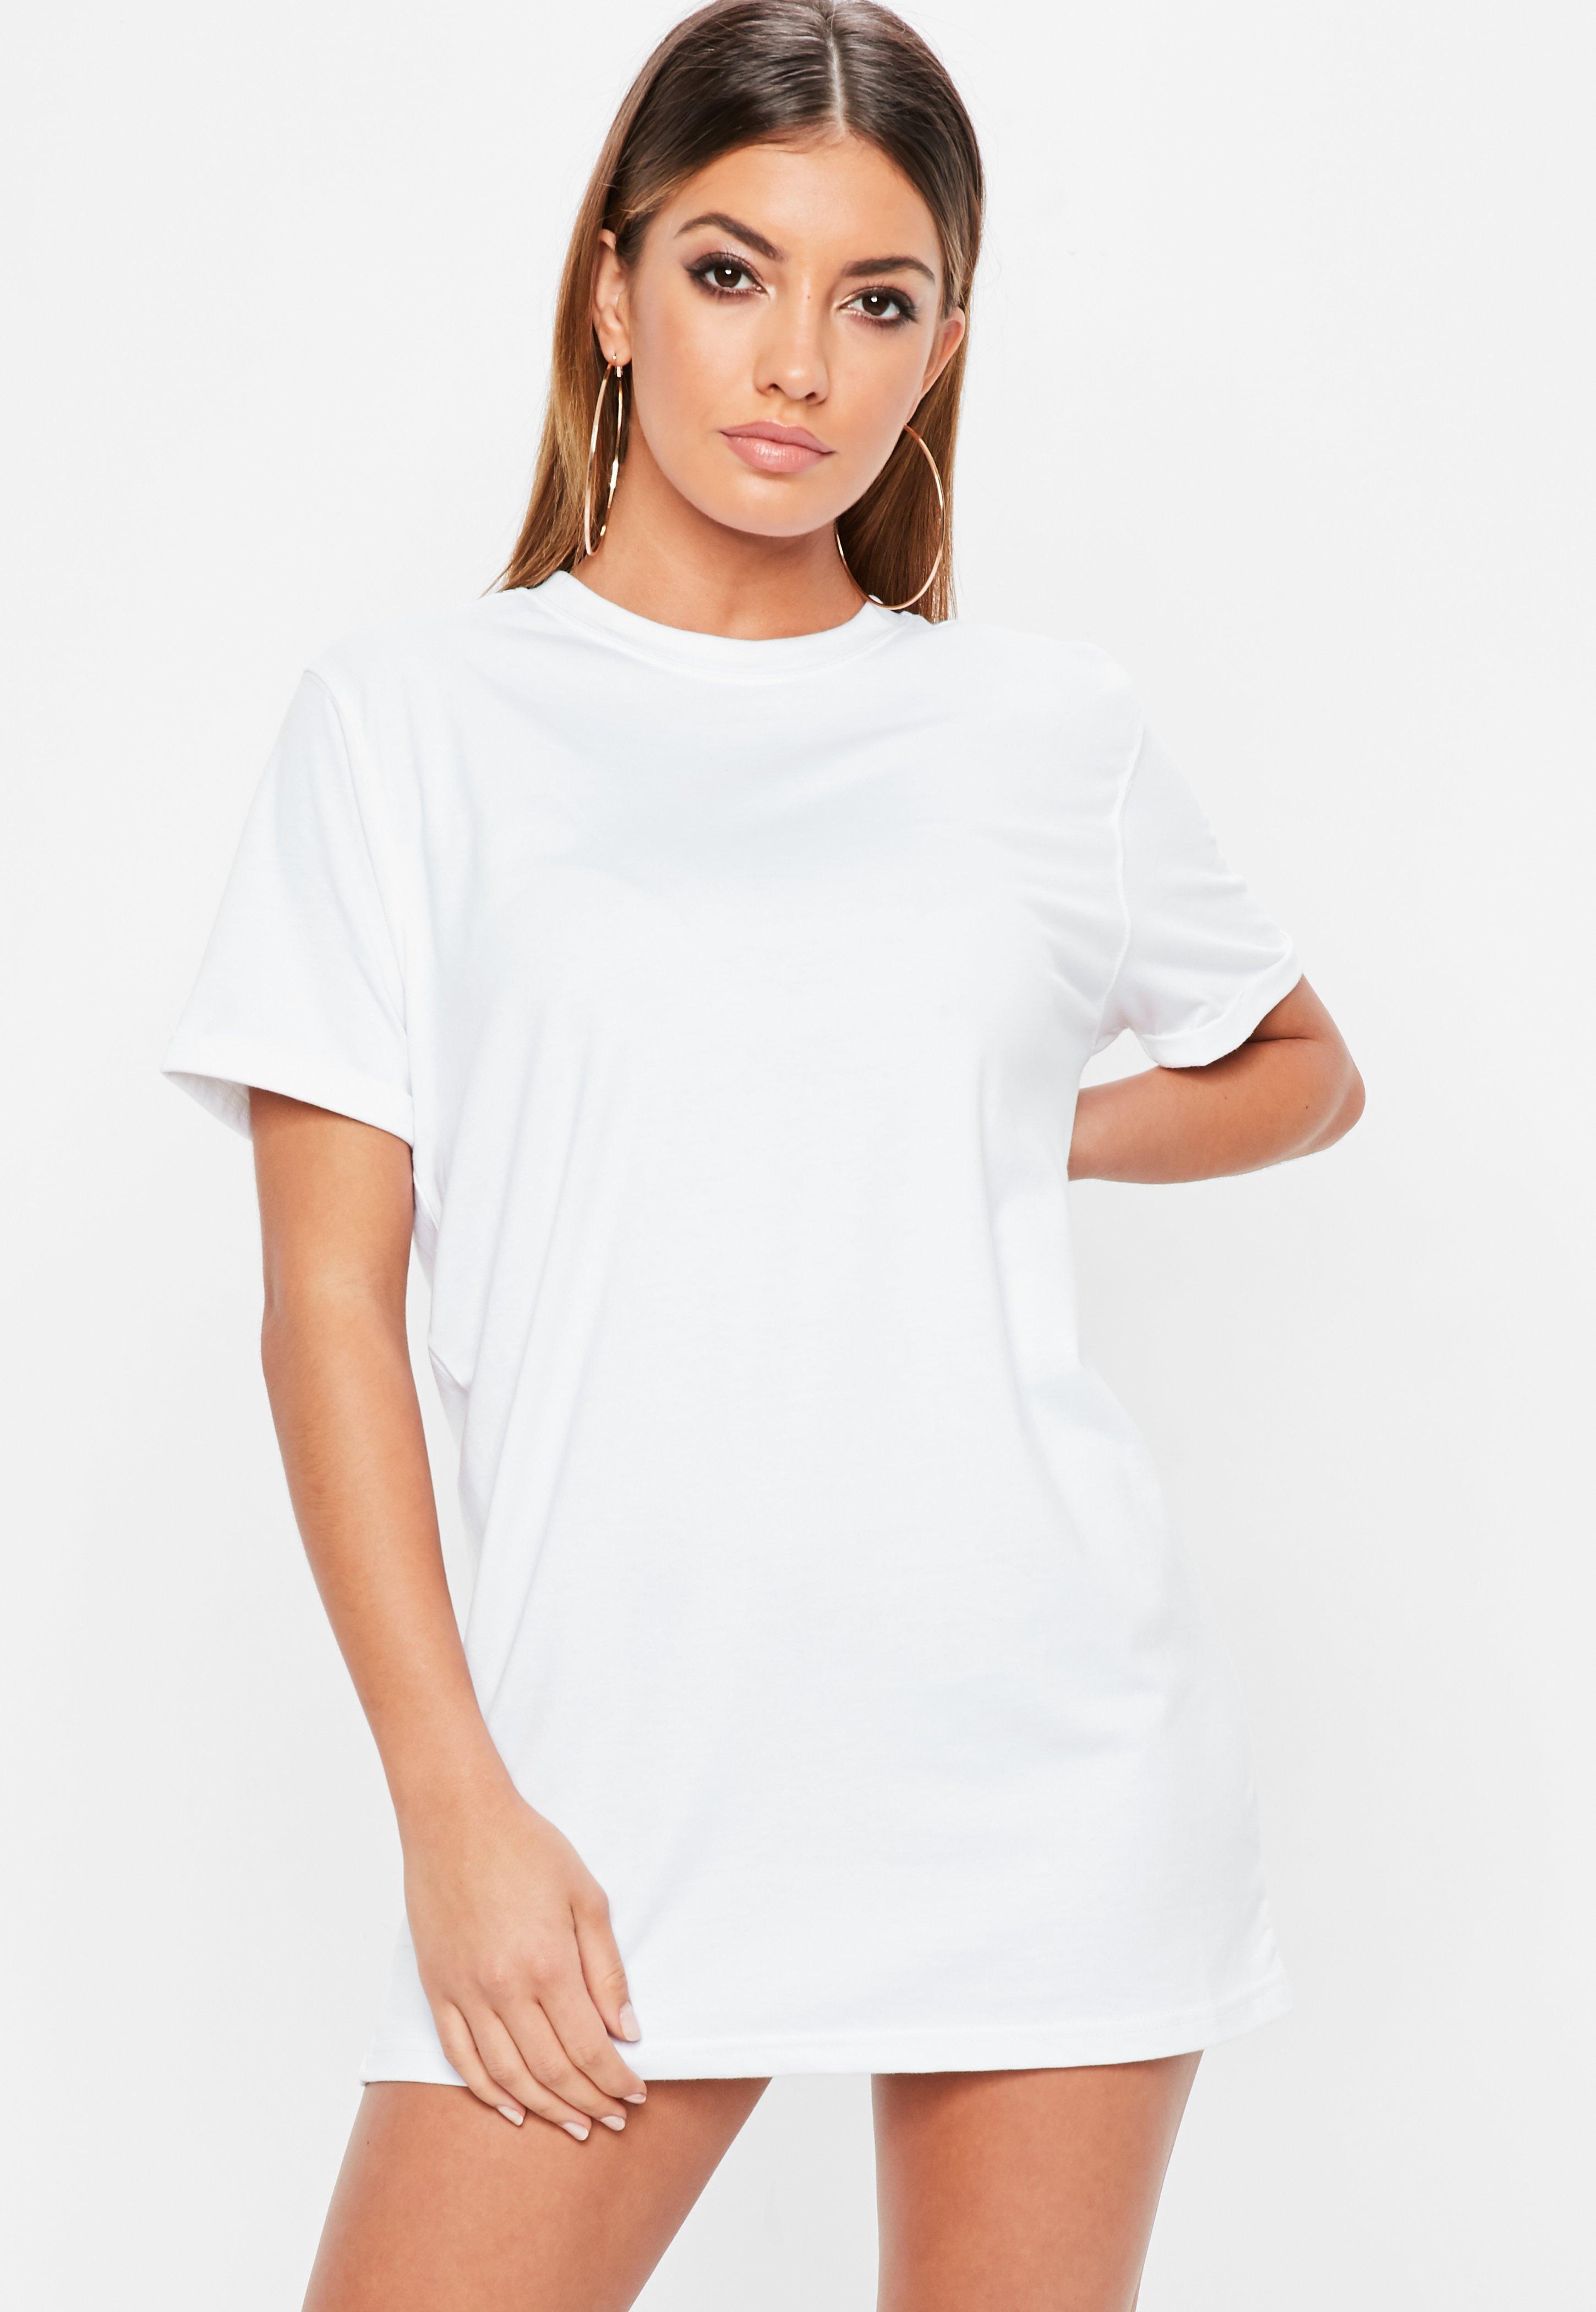 Plain T Shirt Dresses Online, 51% OFF ...